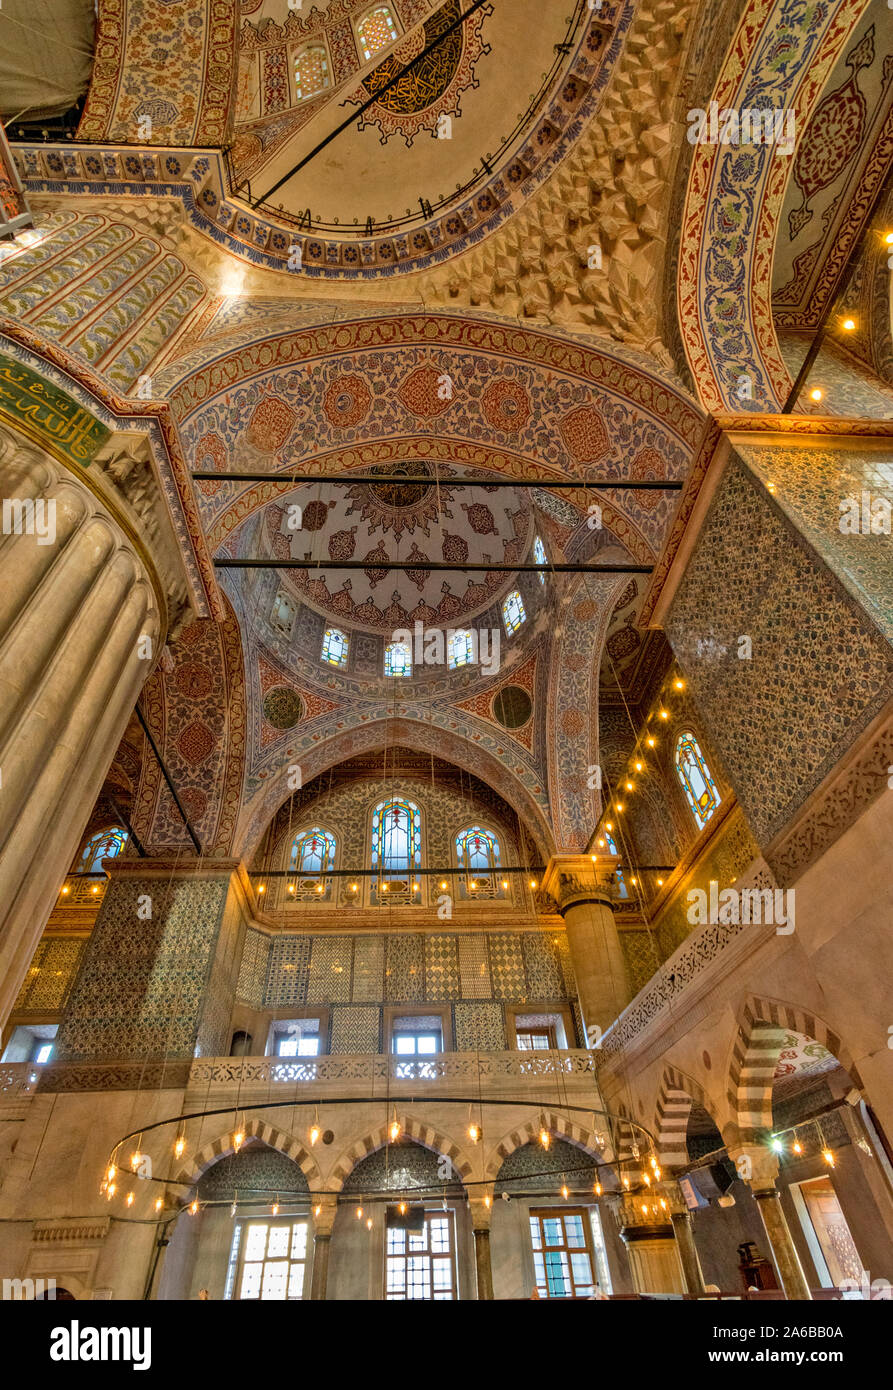 ISTANBUL TÜRKEI Sultan Ahmed oder blaue Moschee innen aufwendig verzierten Kuppel und Decke Stockfoto